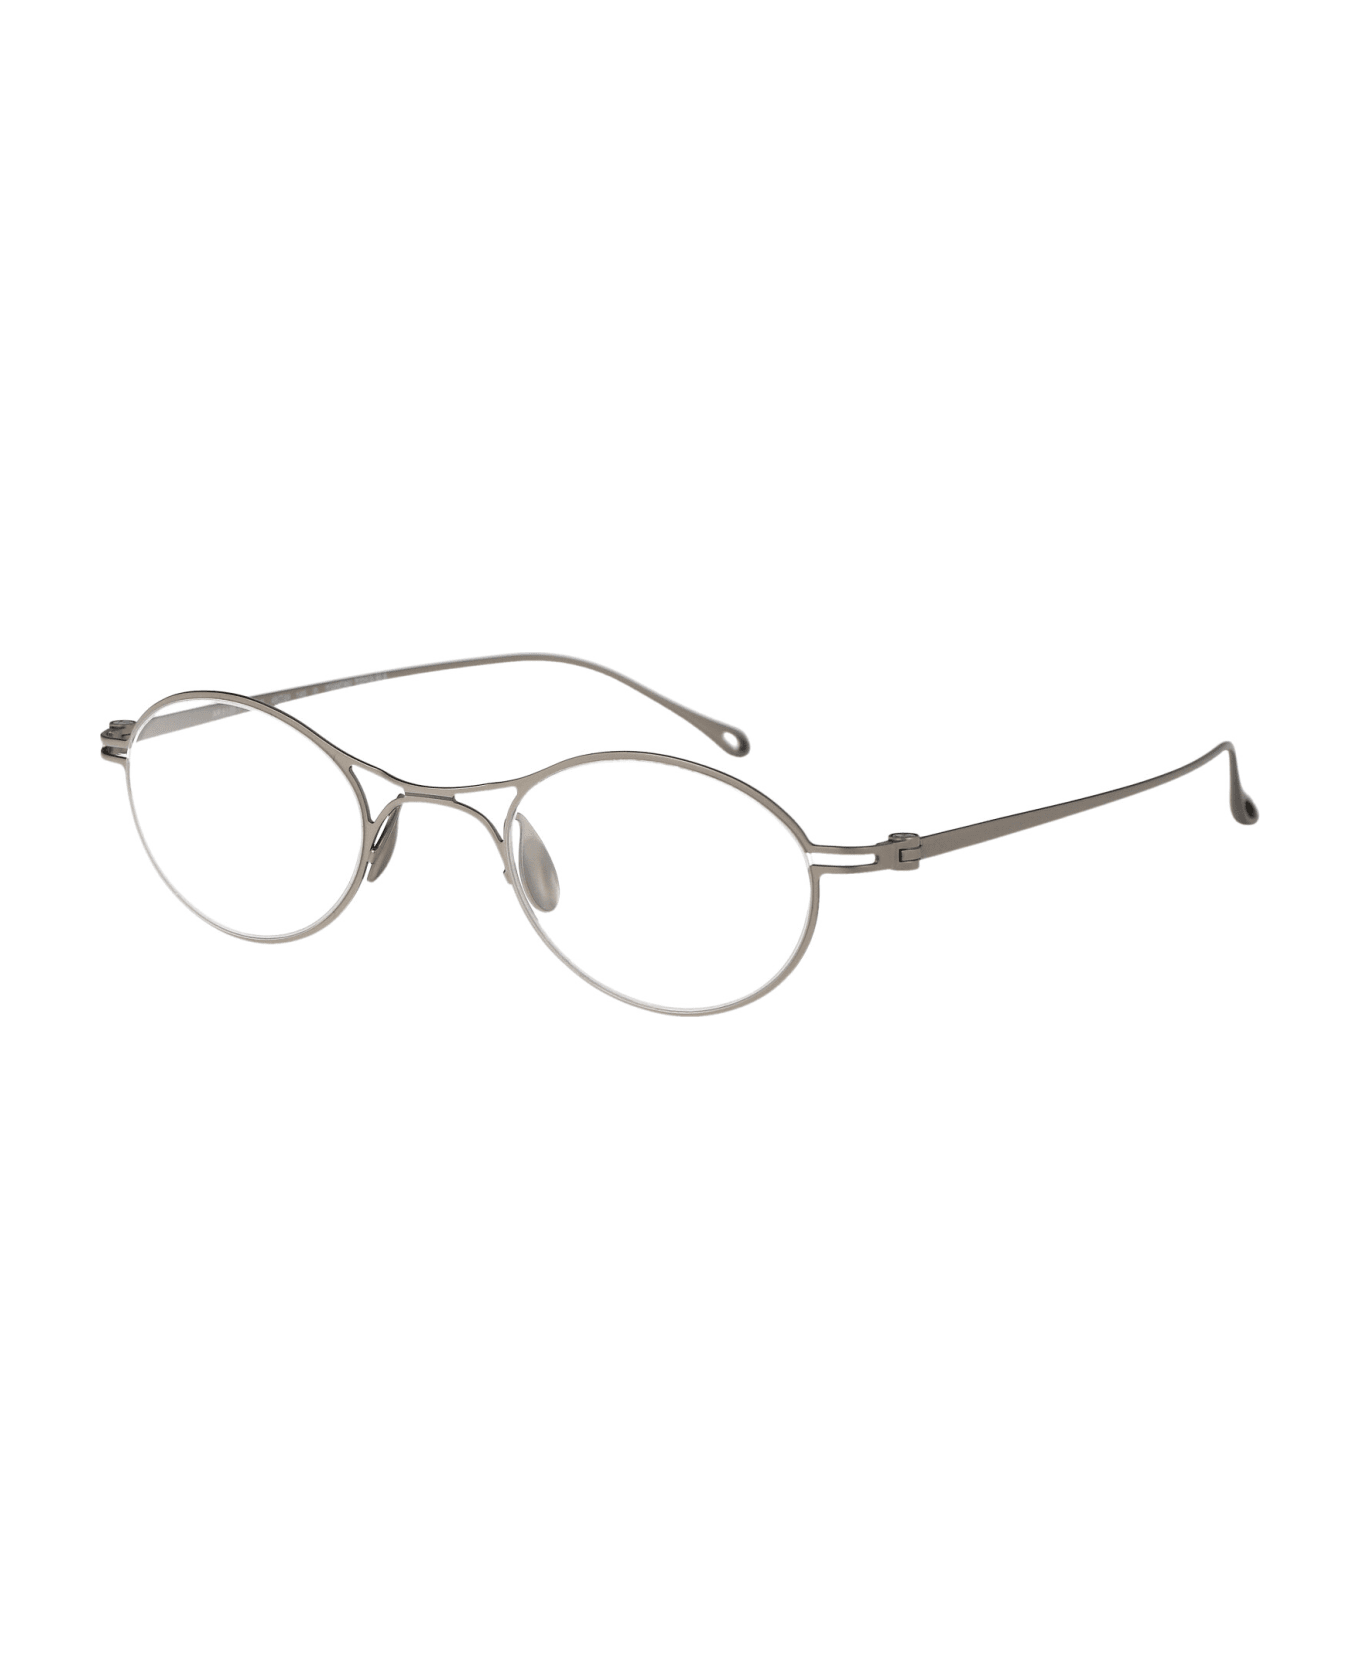 Giorgio Armani 0ar5135t Glasses - 3346 Matte Silver アイウェア